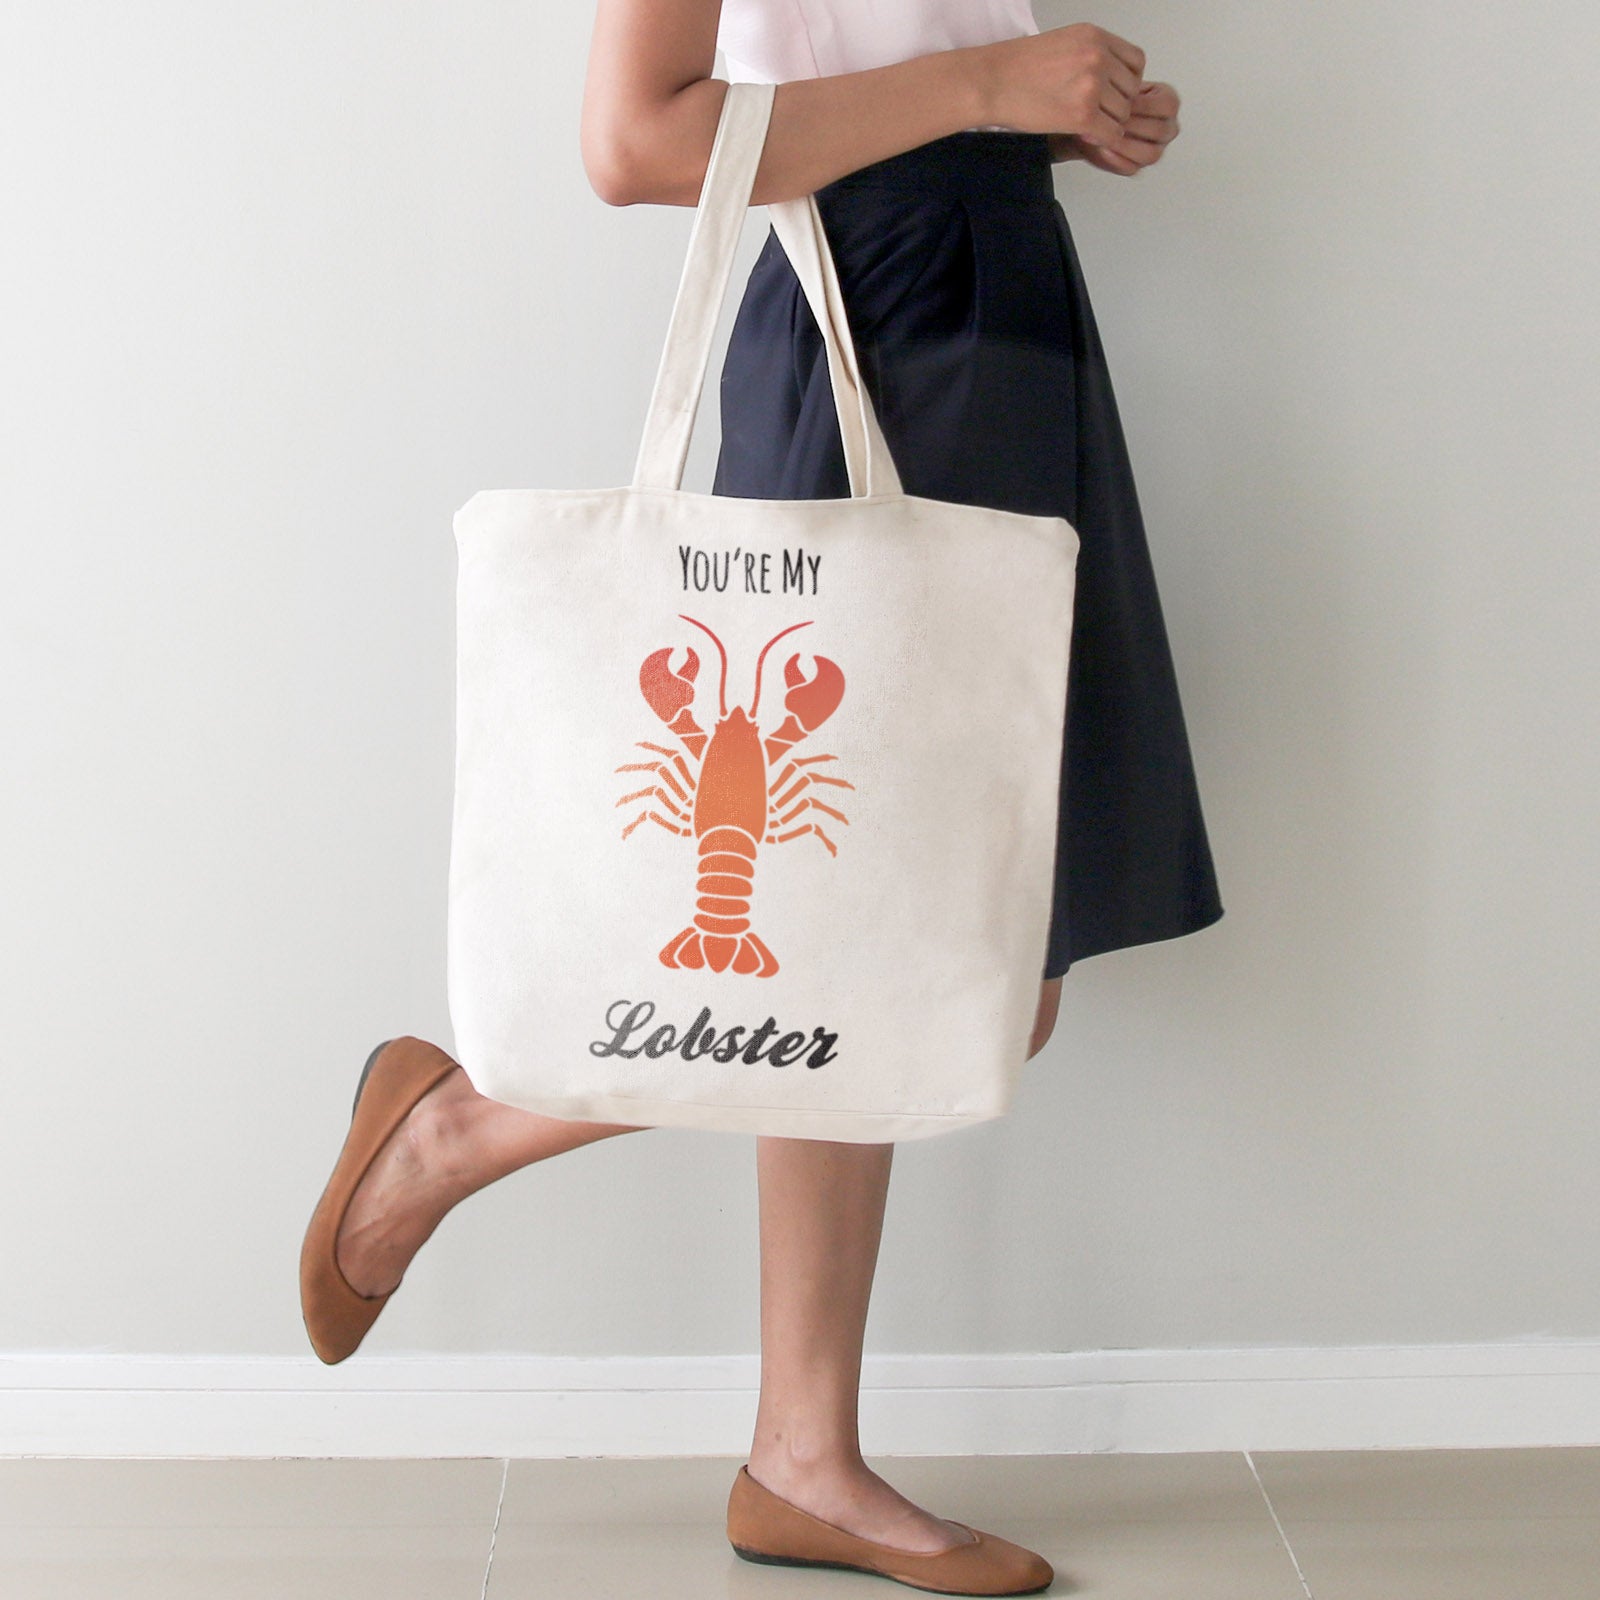 CraftStar Lobster stencil on fabric bag